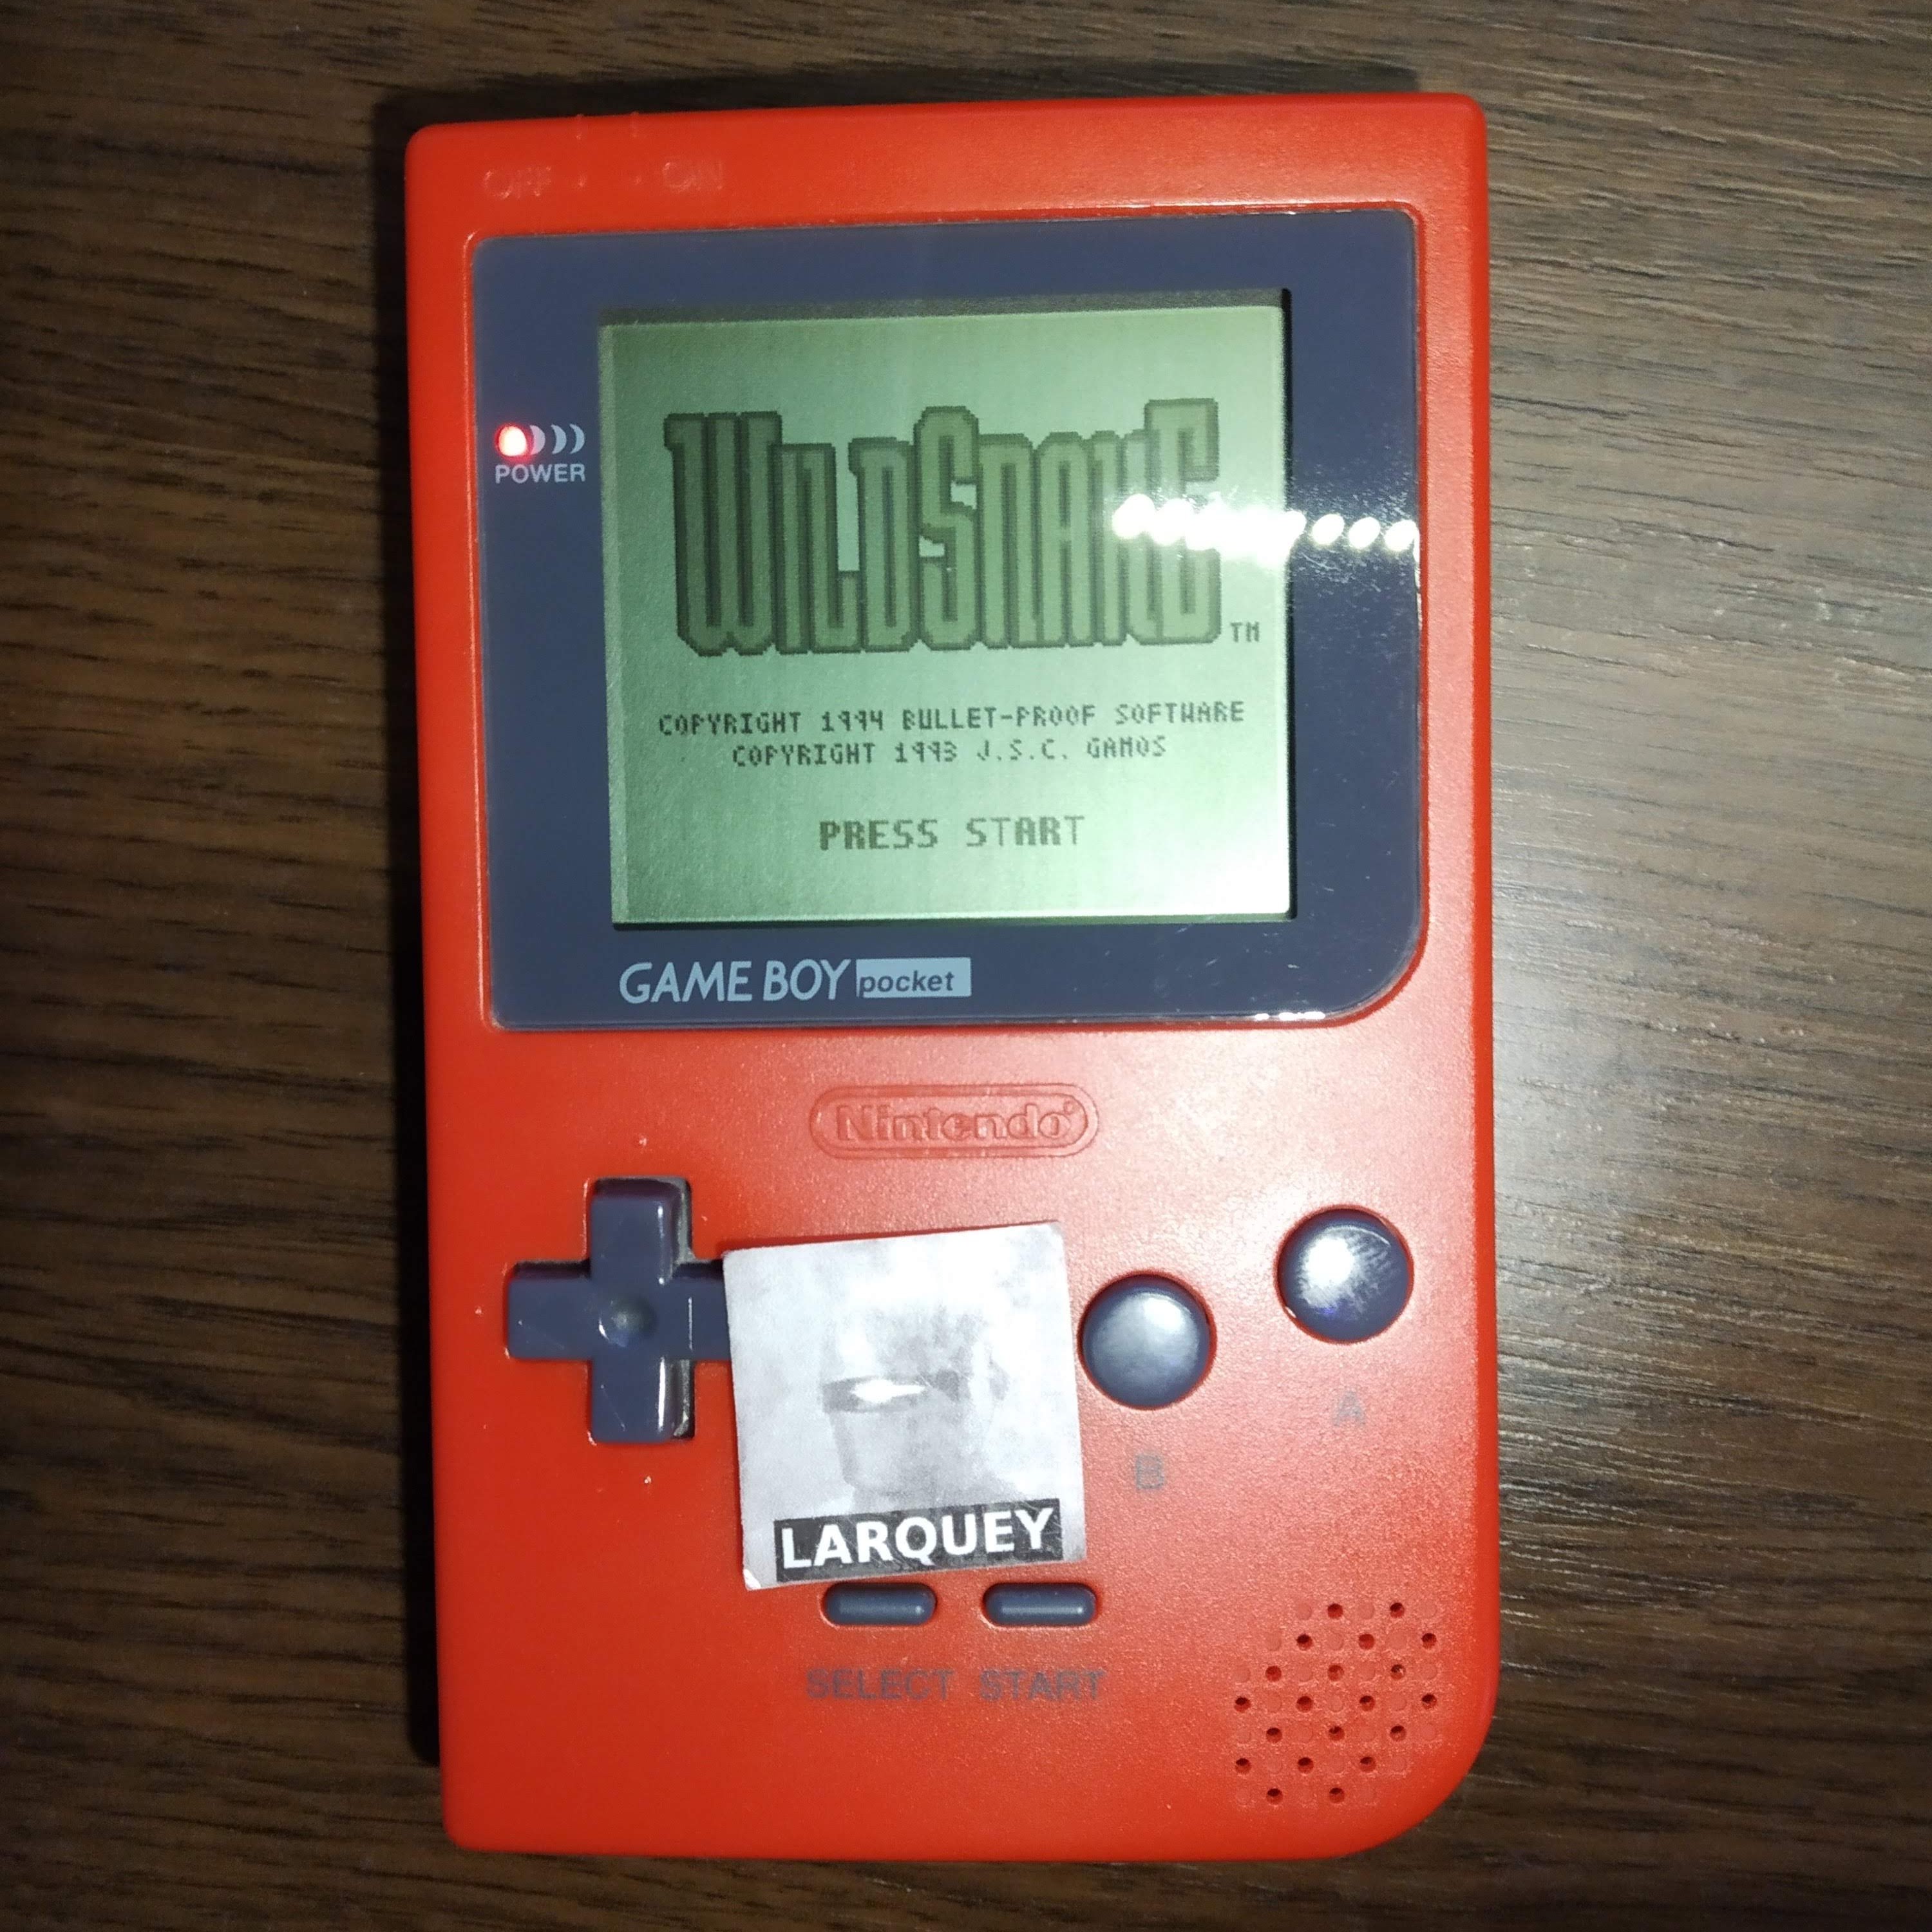 Larquey: WildSnake [Normal] (Game Boy) 4,590 points on 2020-06-01 12:46:44